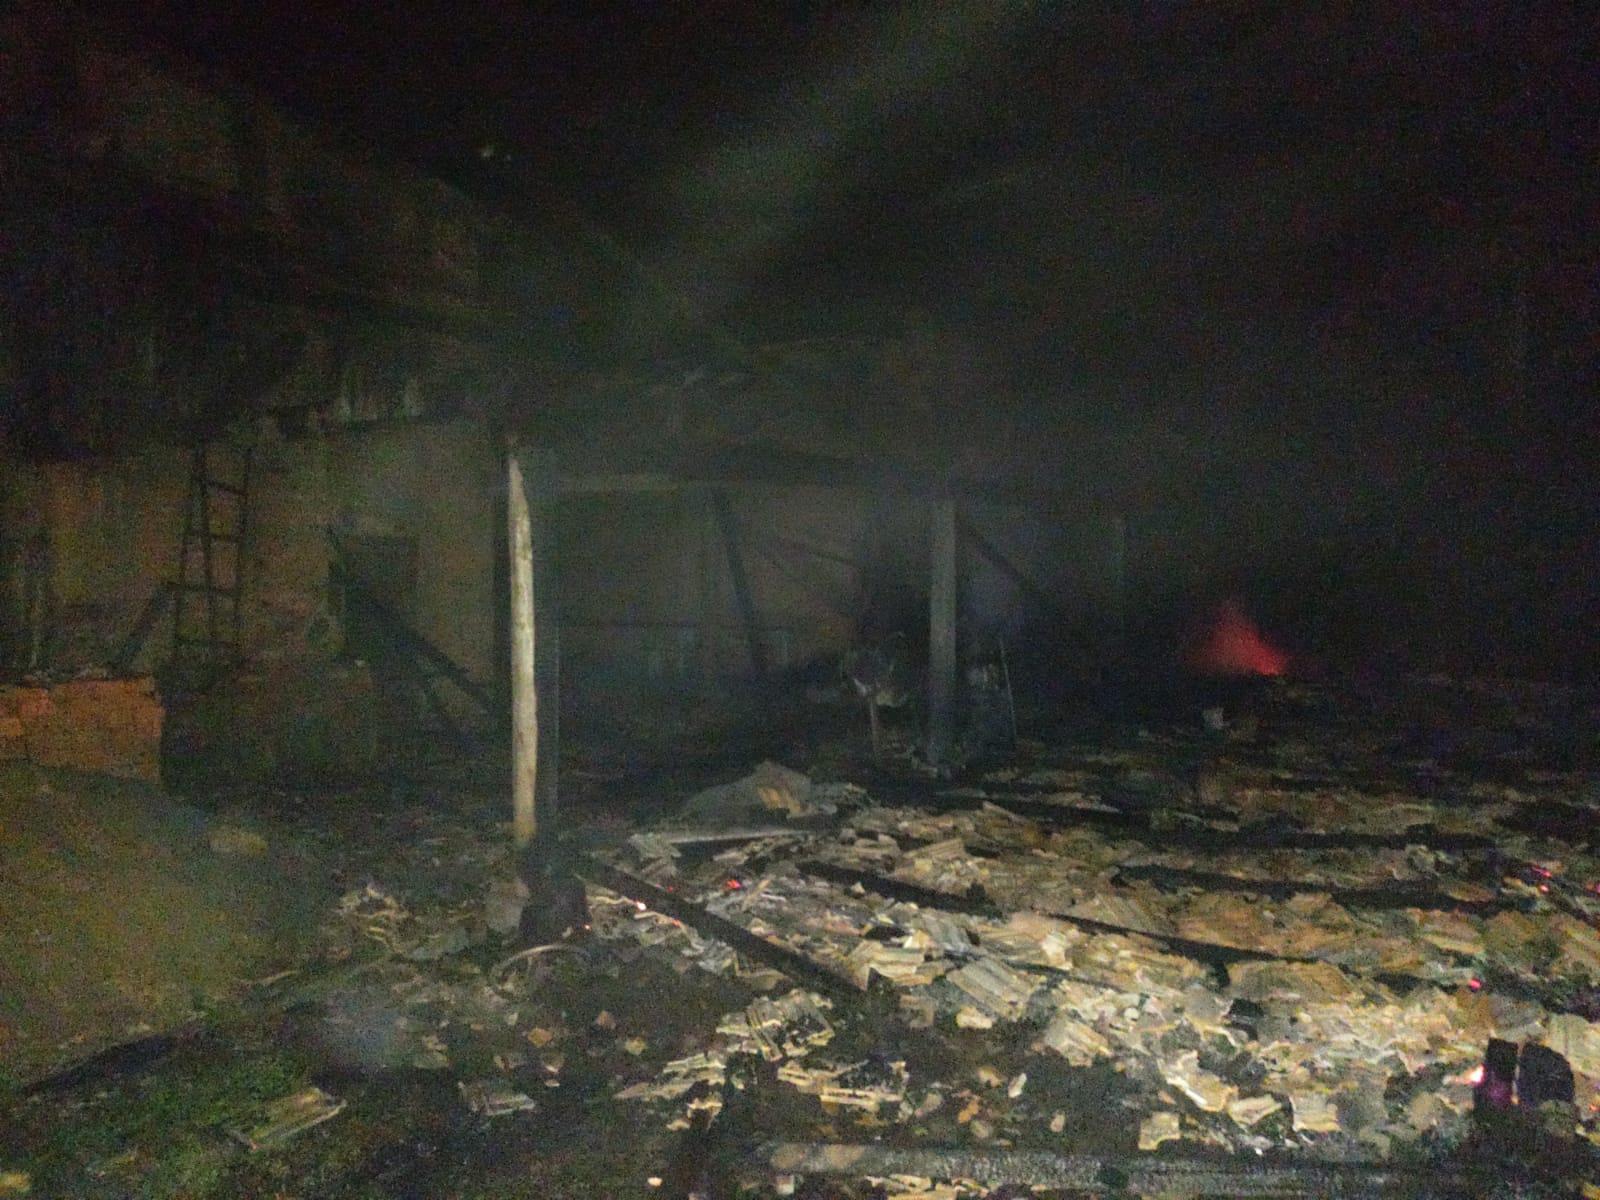 Incêndio destrói galpão agrícola no interior de Leoberto Leal